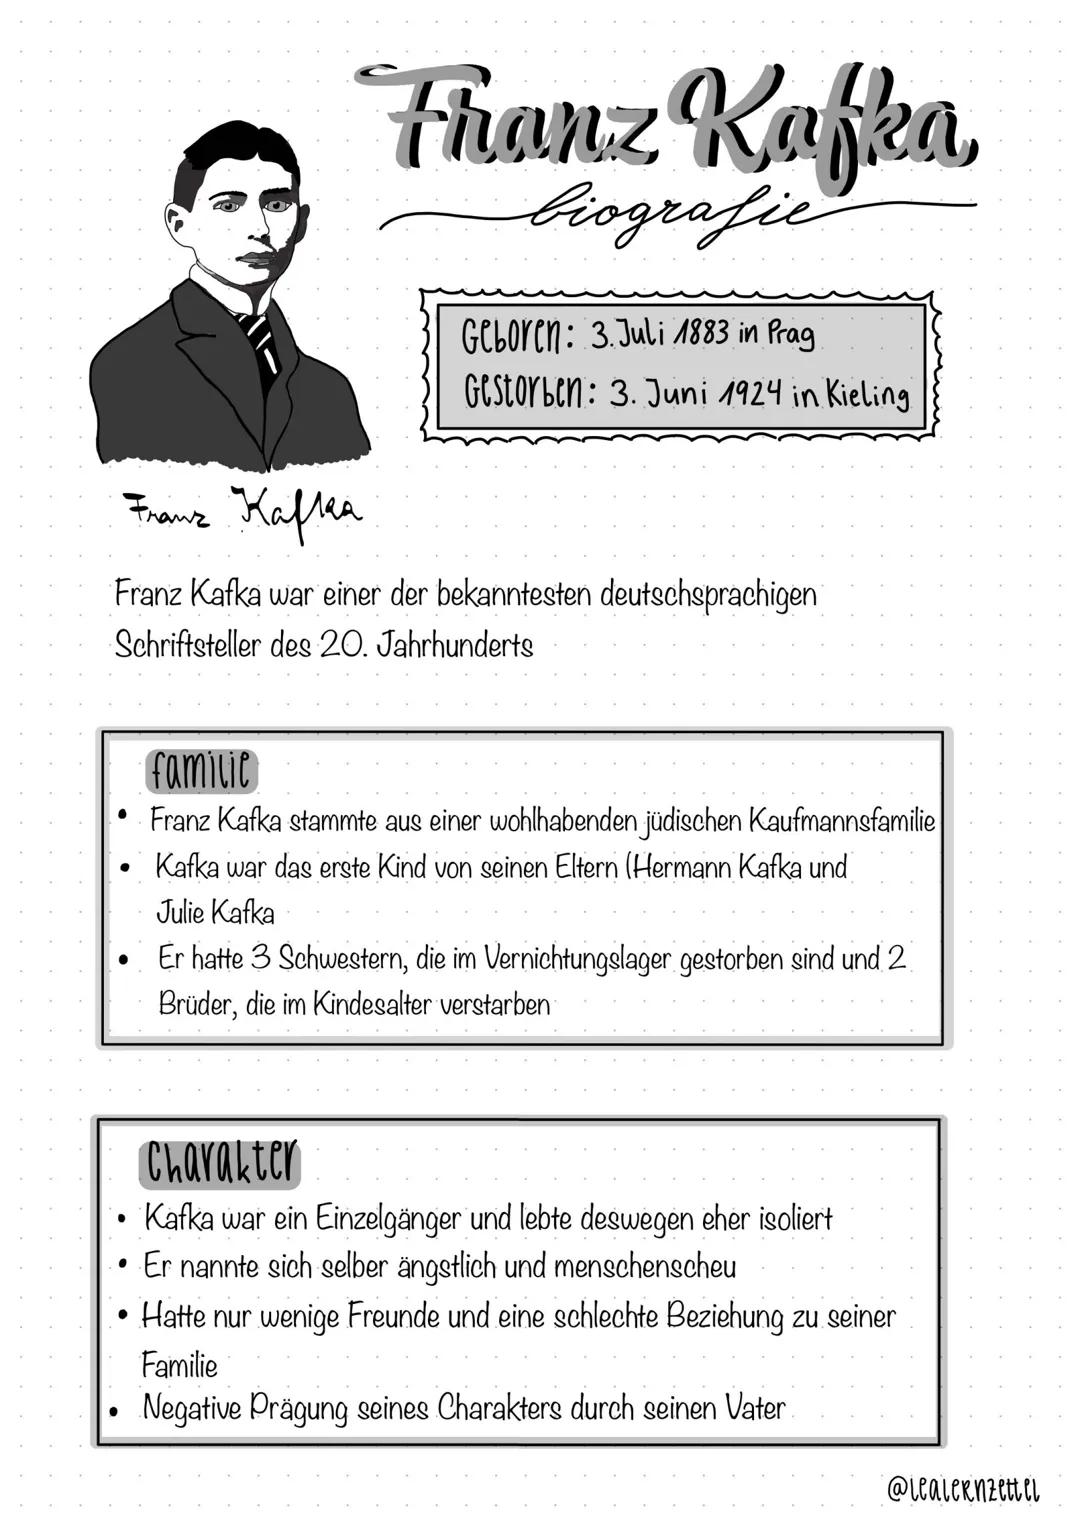 Franz Kafla
Franz Kafka war einer der bekanntesten deutschsprachigen
Schriftsteller des 20. Jahrhunderts
●
●
●
Franz Kafka
biografie
Geboren